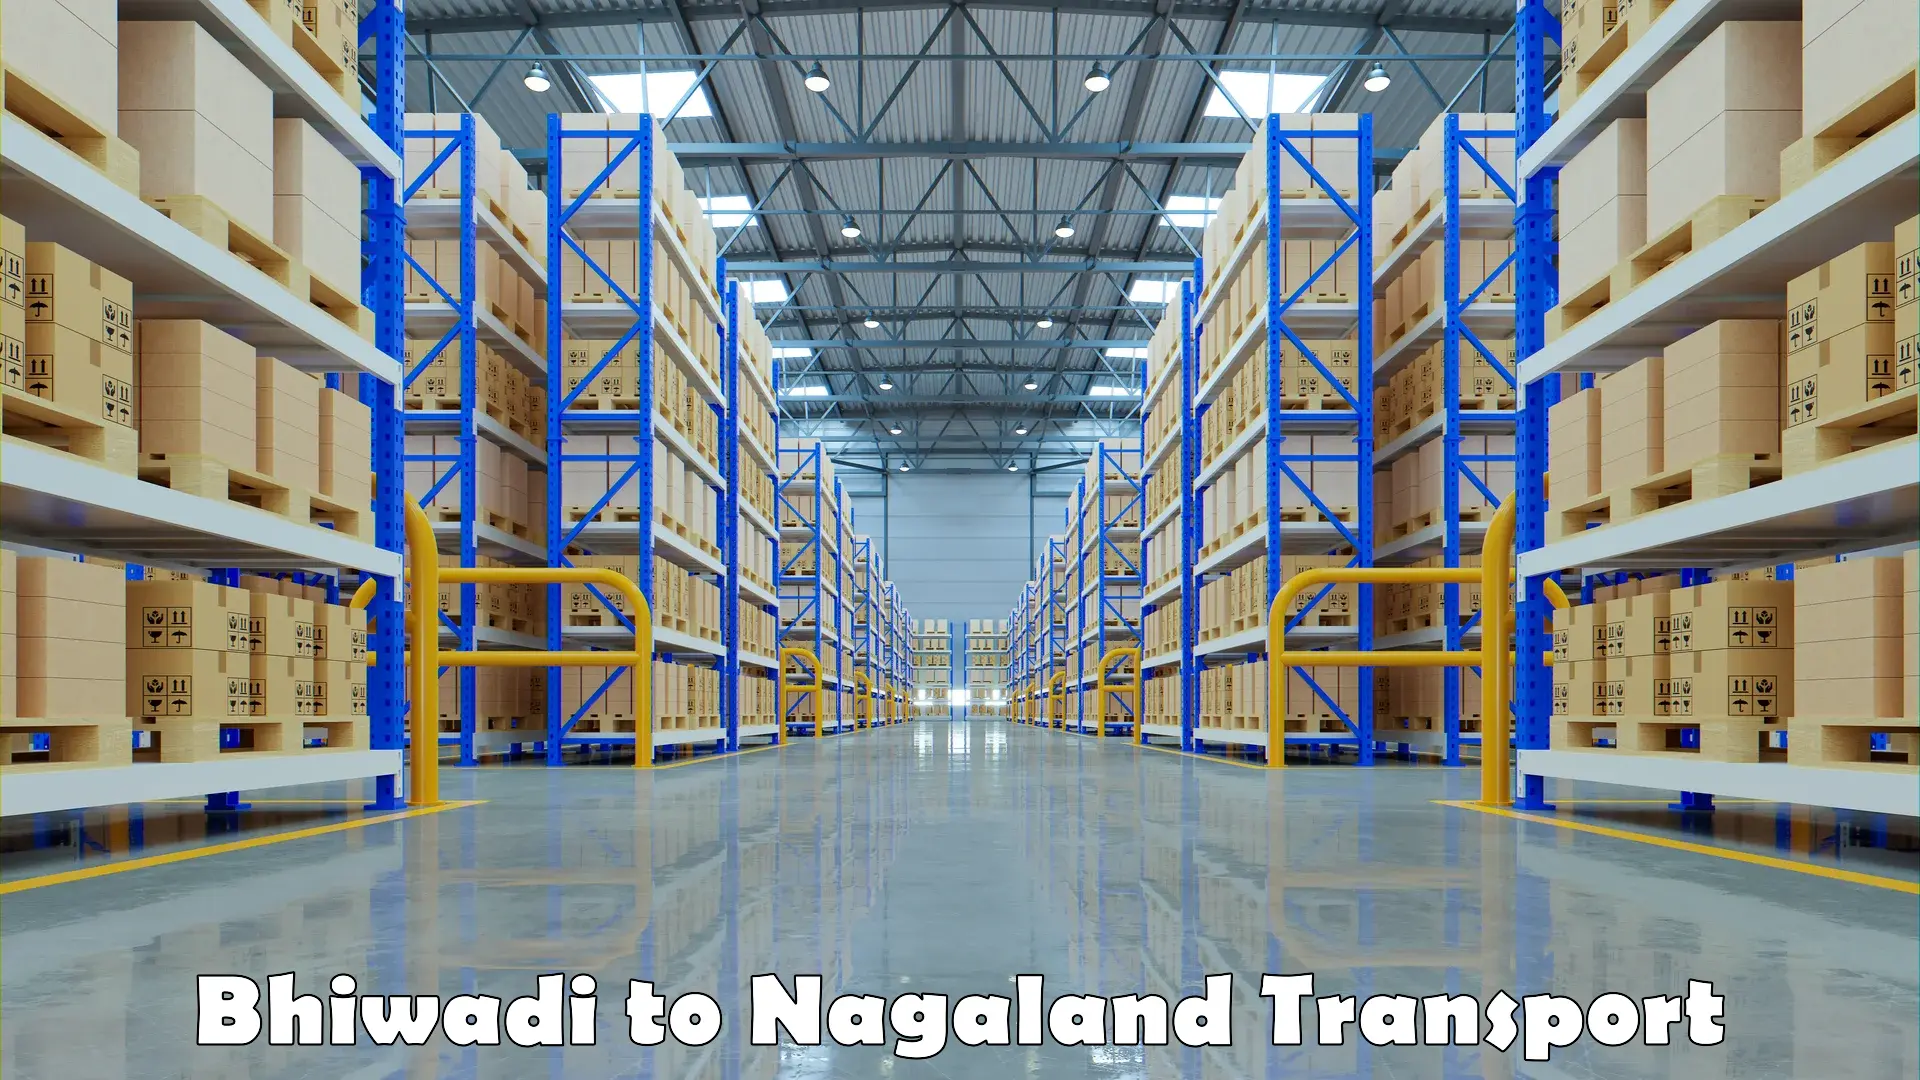 Furniture transport service Bhiwadi to Nagaland